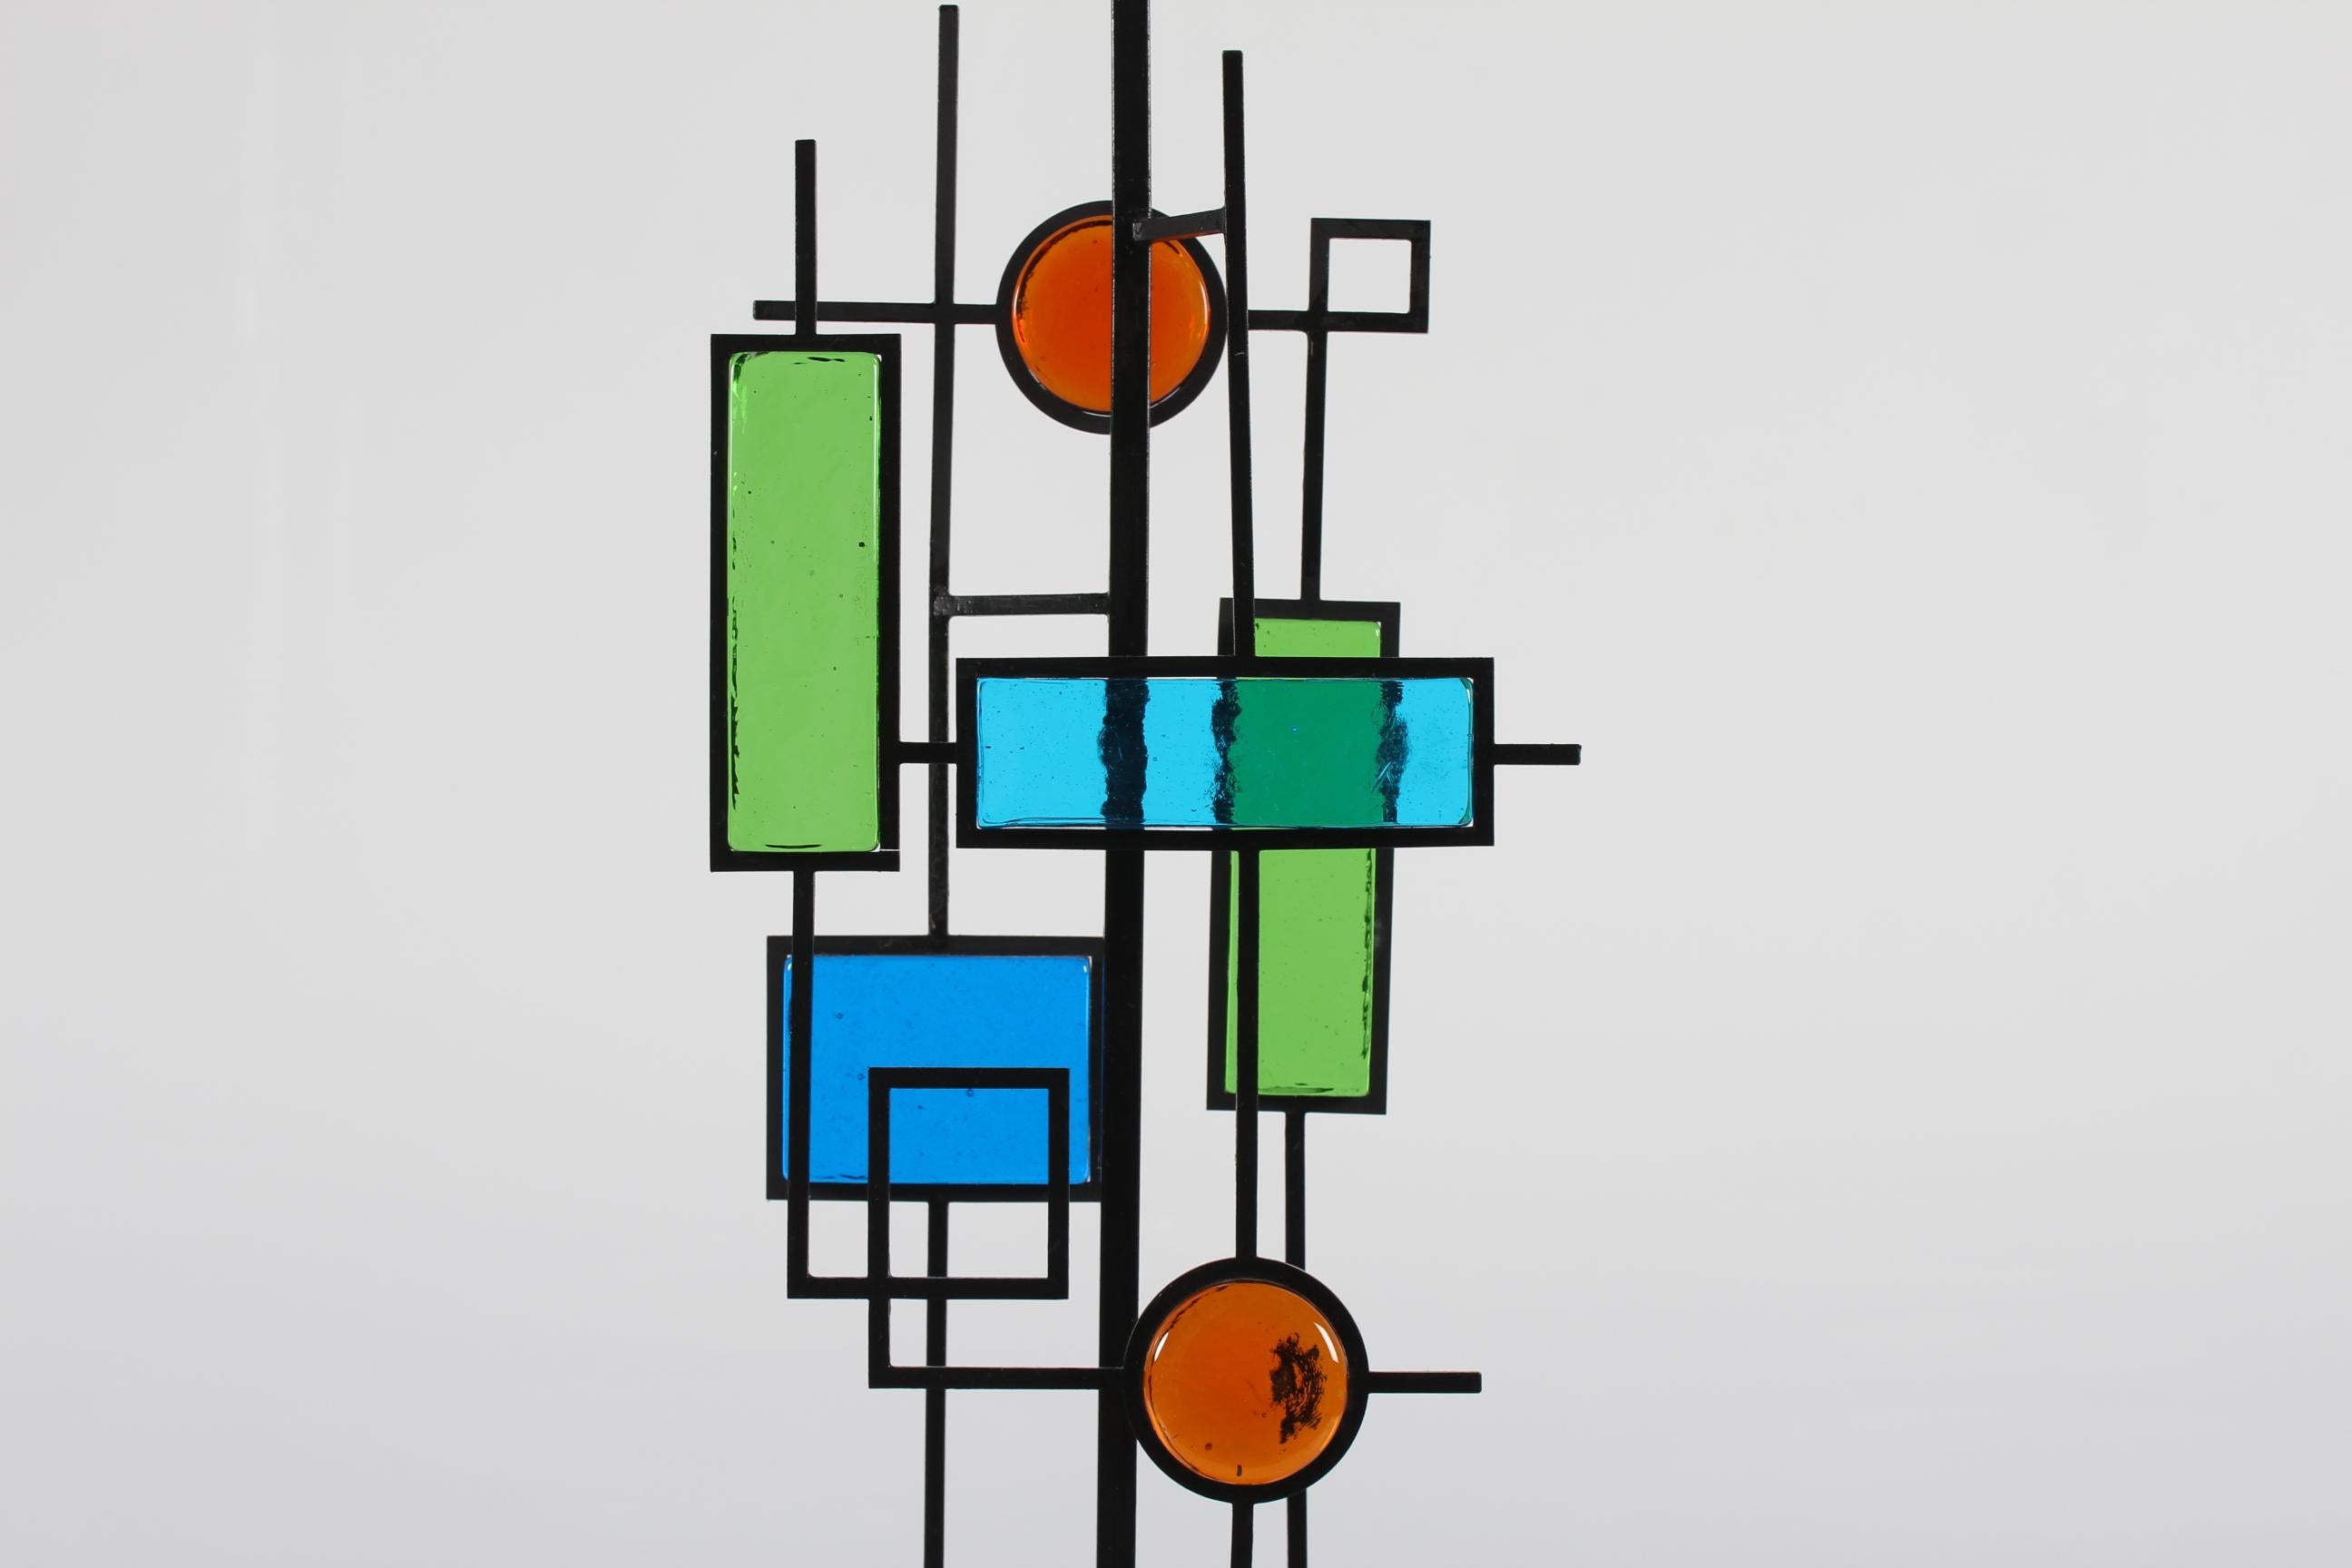 Grande lampe de table conçue par le danois Svend Aage Holm Sørensen (1913-2004).
Le pied de la lampe a un cadre en fer laqué noir. Insérées dans le cadre, des mosaïques géométriques en verre de couleur bleue, verte et rouge. La base carrée du pied